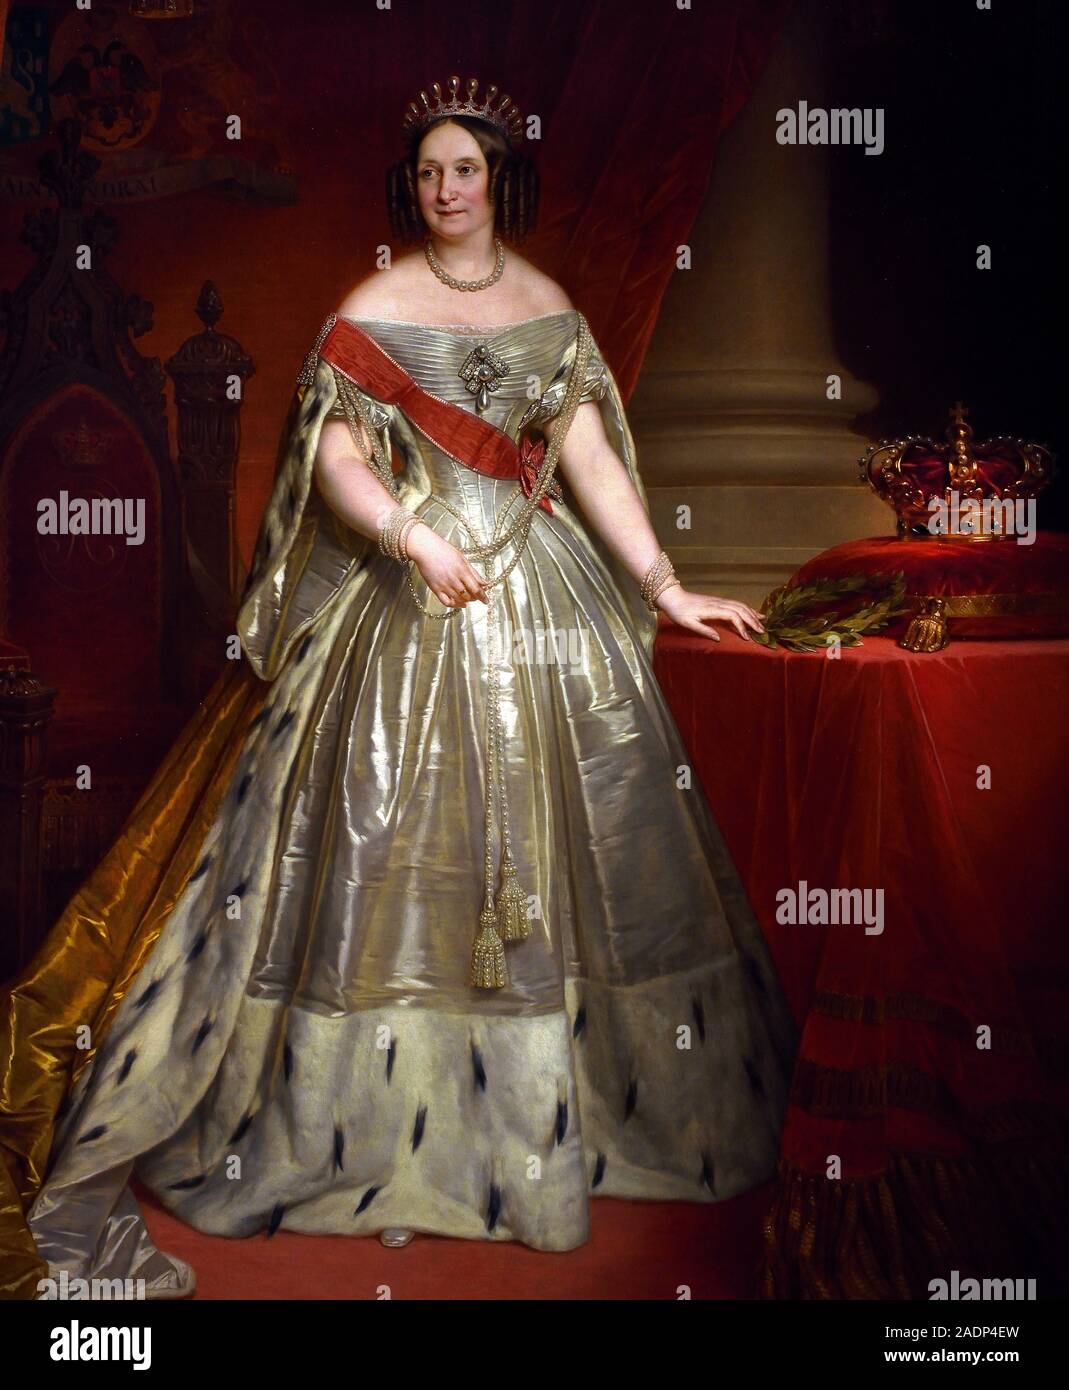 La grande-duchesse et Reine Anna Pavlovna 1849-1850 par Nicaise de Keyser (1813- 1887), peintre belge ( l'épouse du roi Guillaume II des Pays-Bas ) , joyaux de la cour impériale russe, 18e-19e siècle, la Russie. Banque D'Images